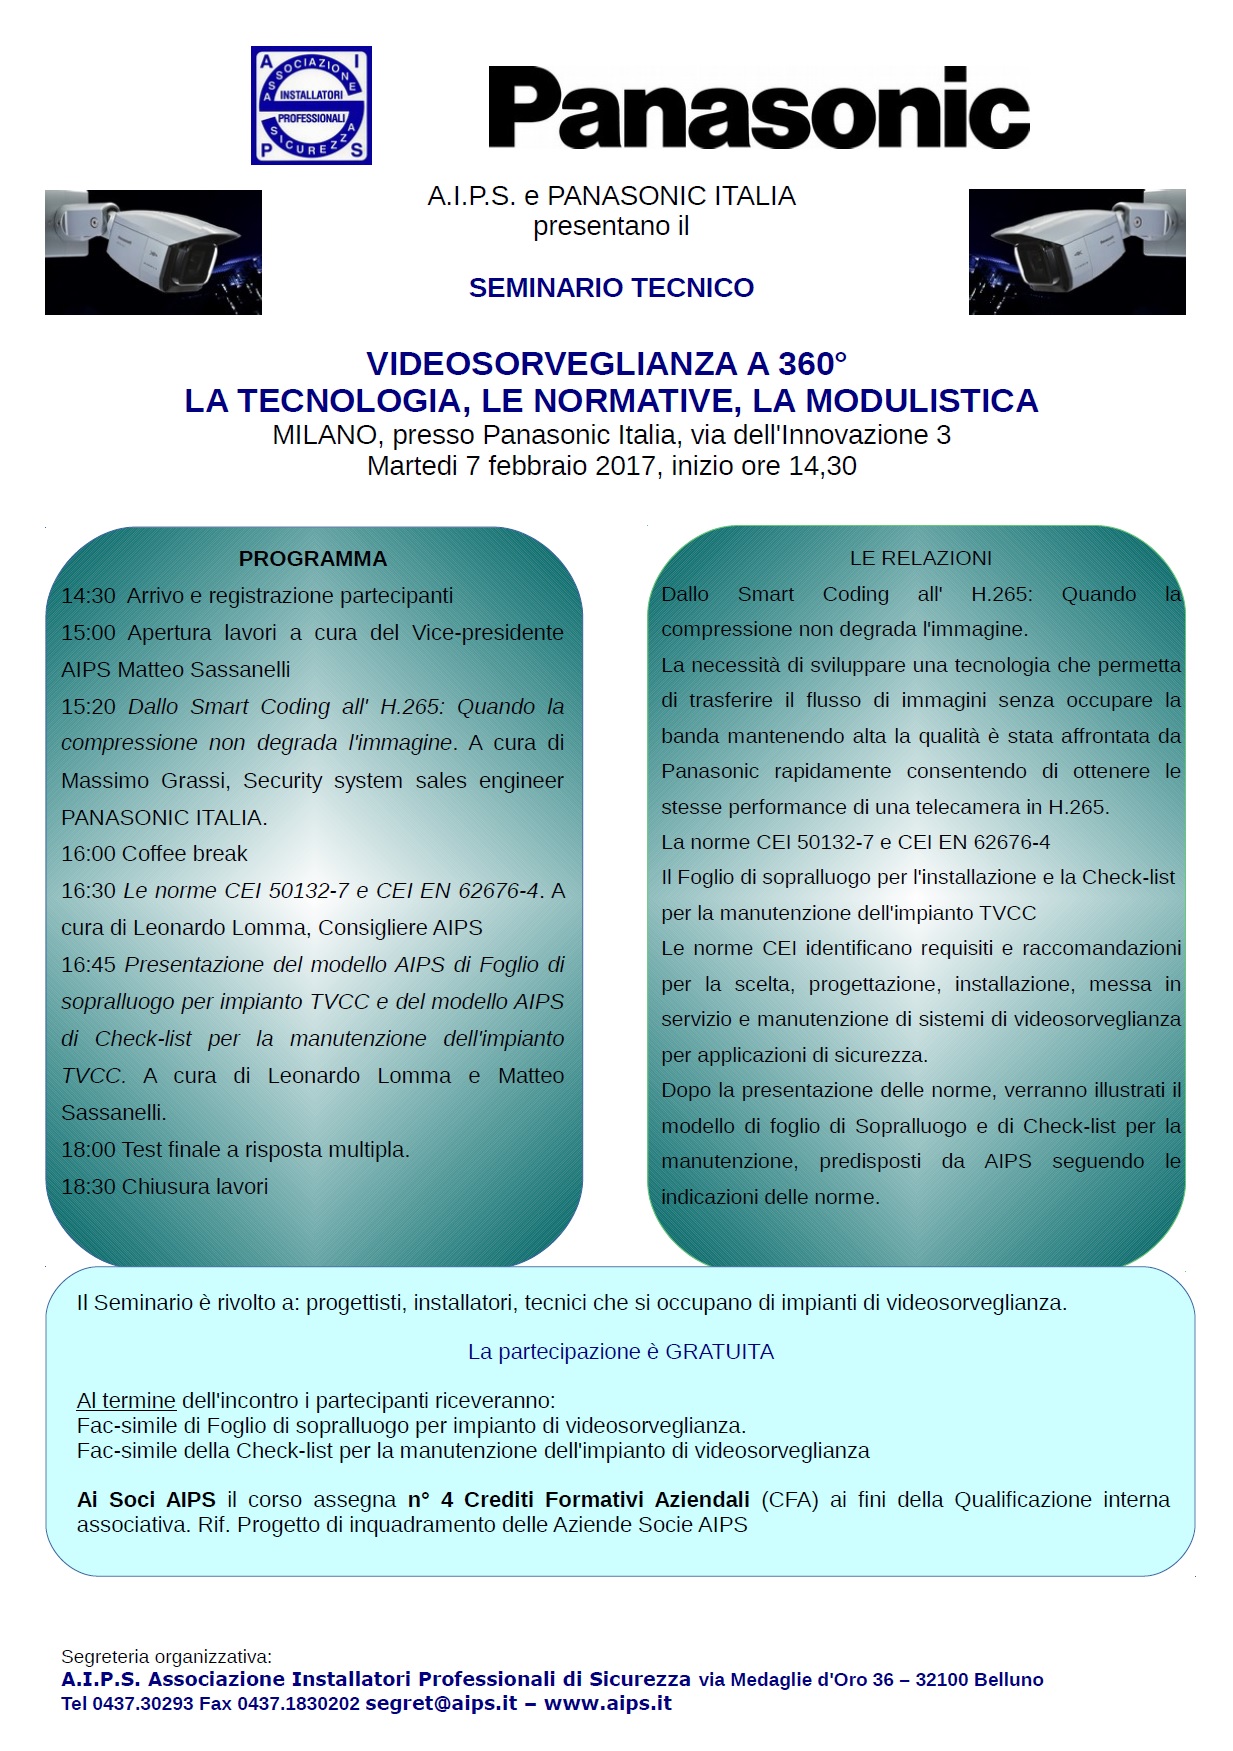 Seminario tecnico TVCC Milano 7/2/2017